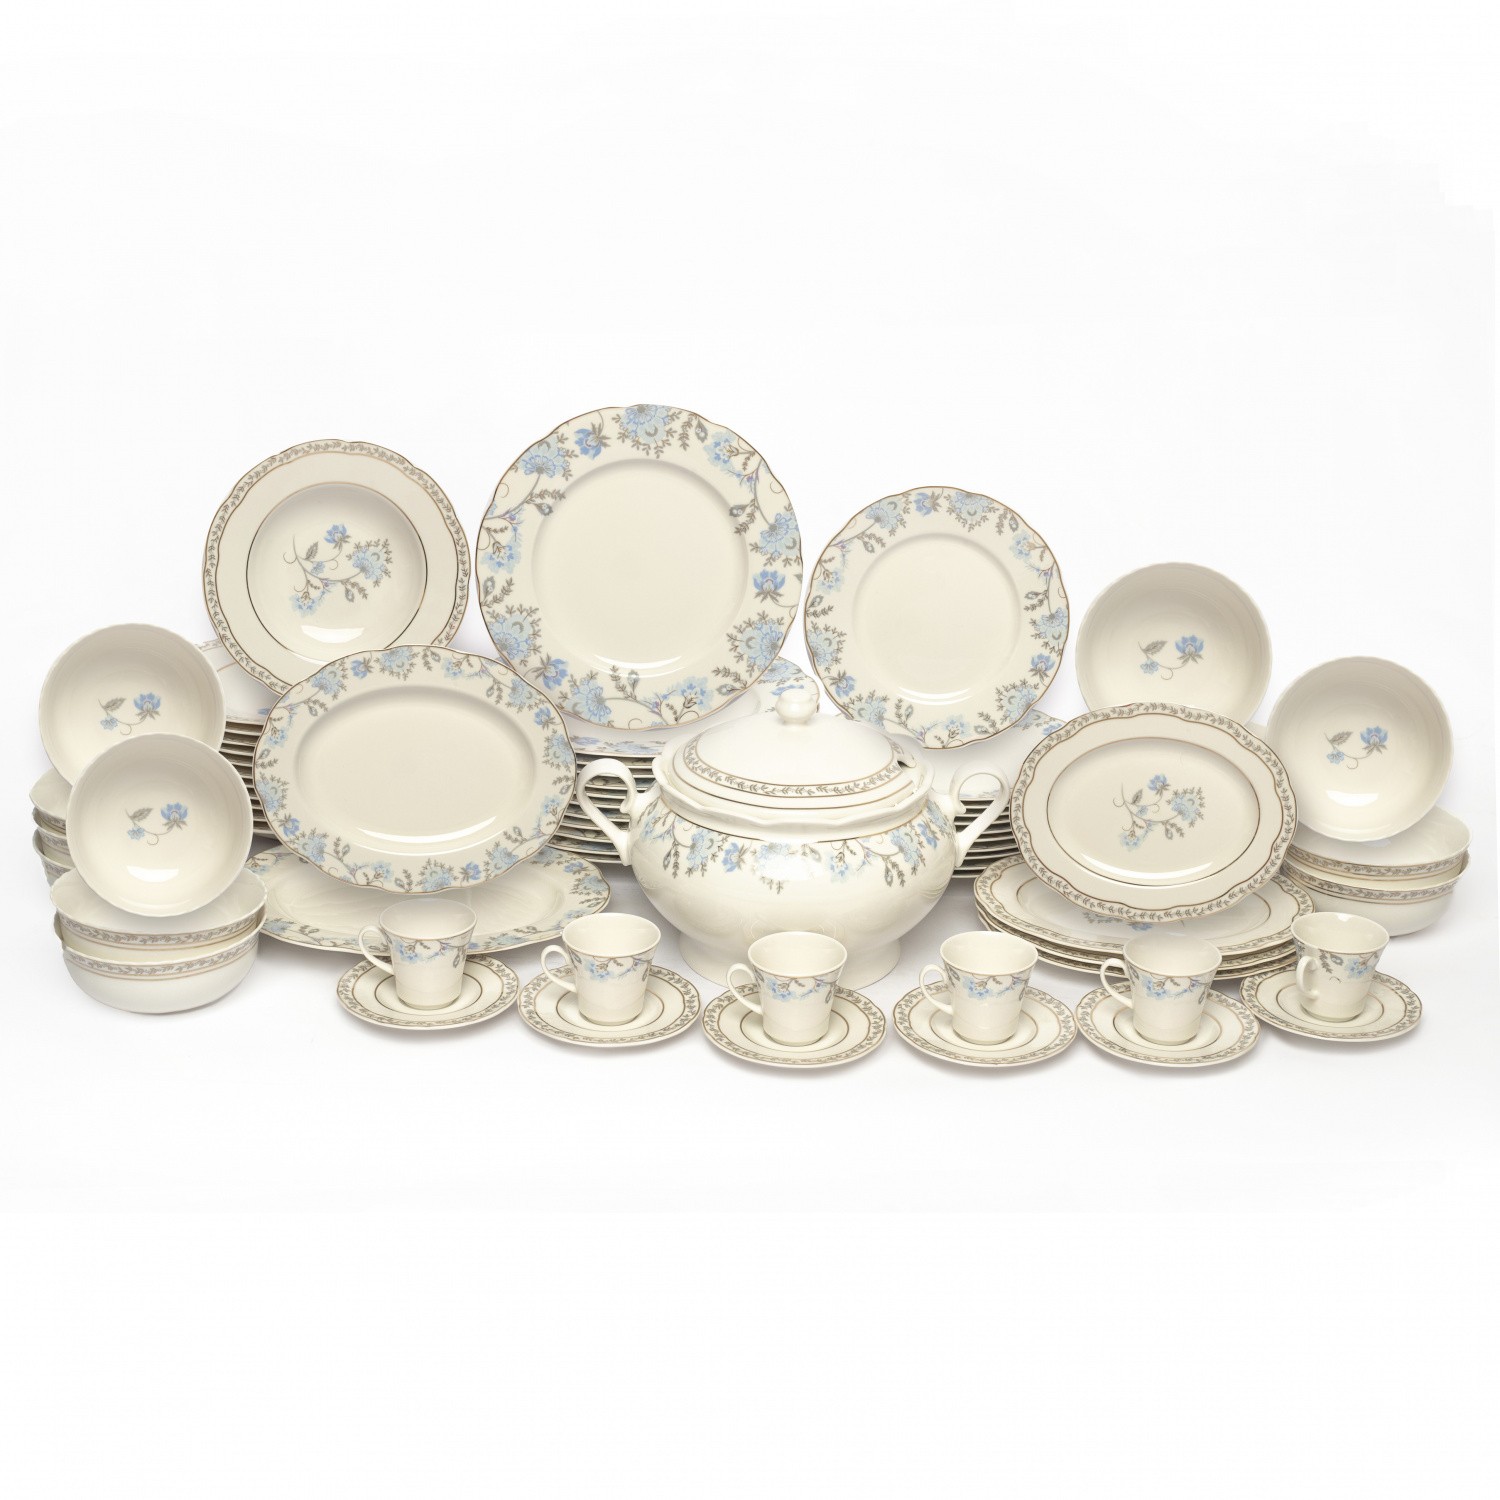 фото Комплект столовой посуды kutahya porselen olympos 68 предметов 542ol kutahya porcelen